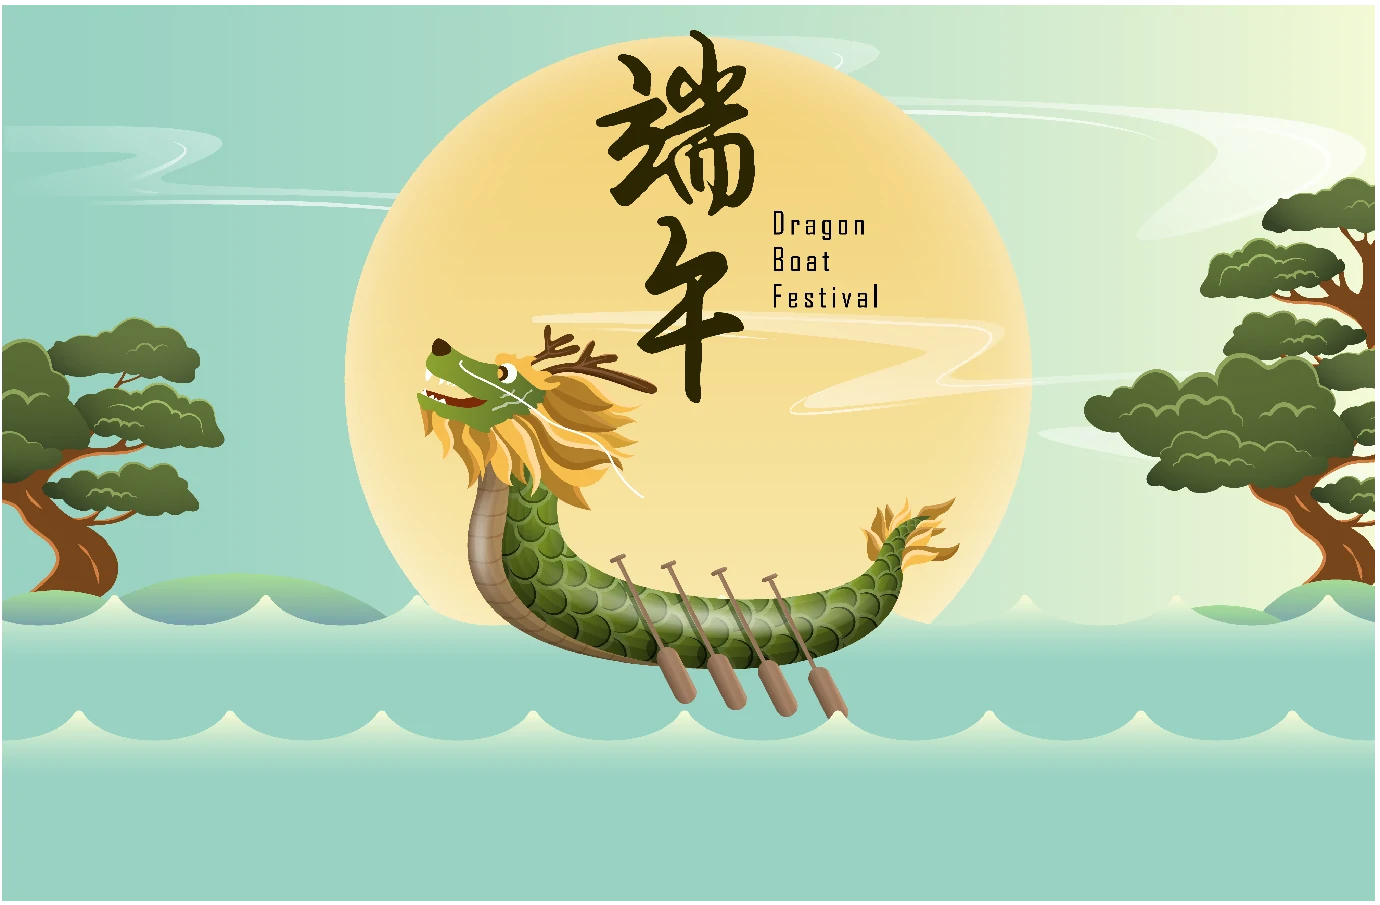 中国传统节日端午节端午安康赛龙舟包粽子插画海报AI矢量设计素材【014】